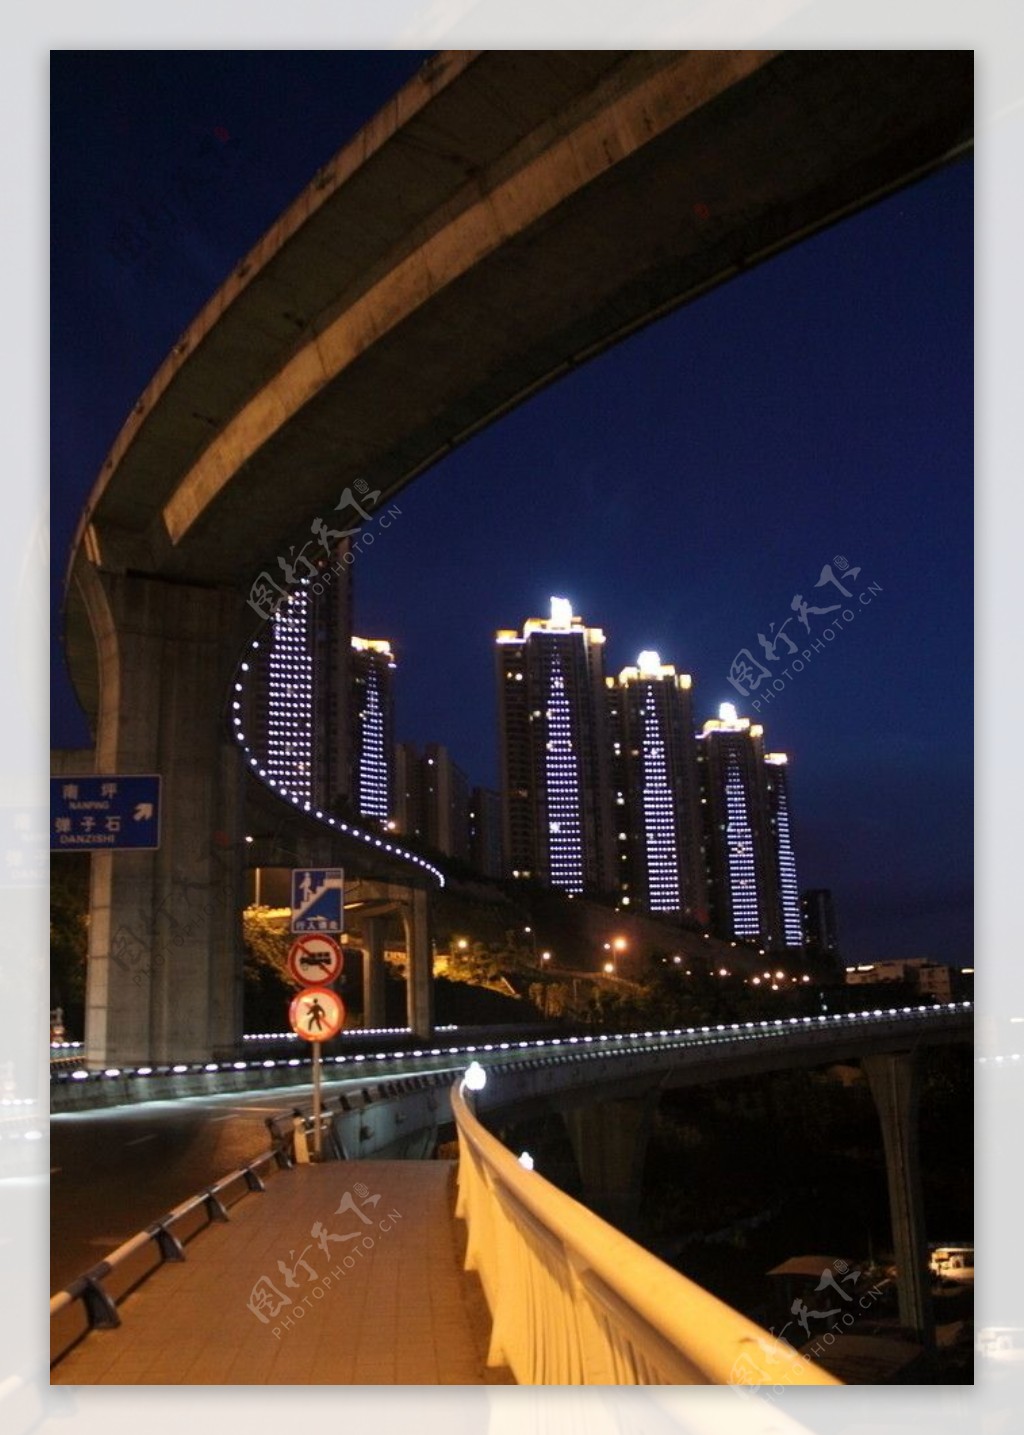 菜园坝大桥夜景之华灯初上图片